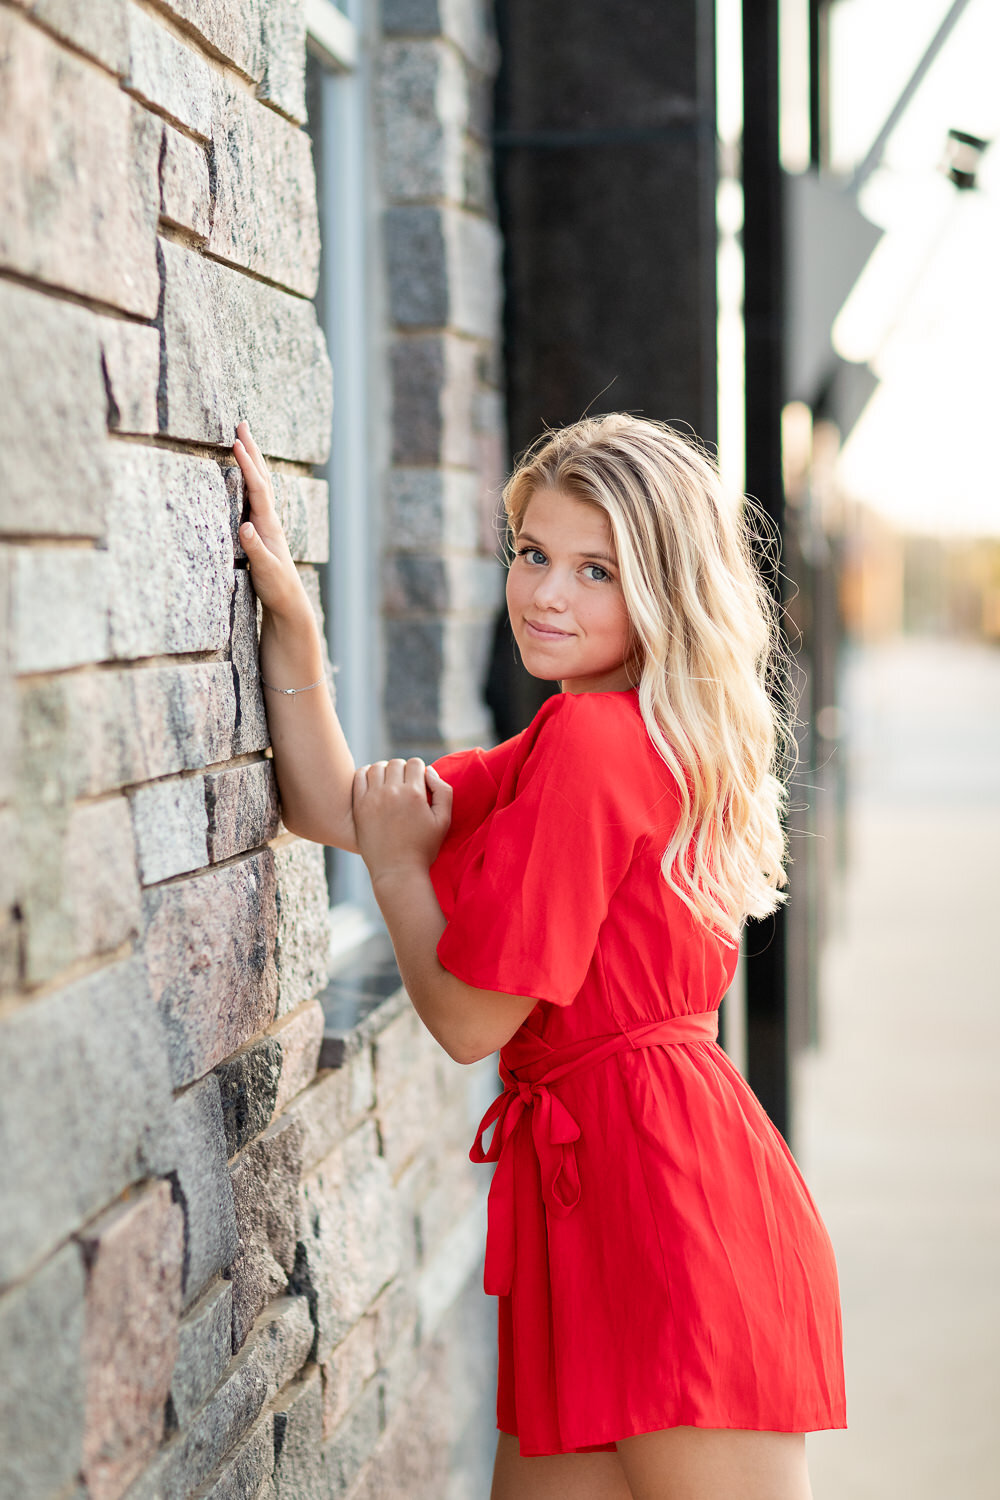 Senior girl by brick wall